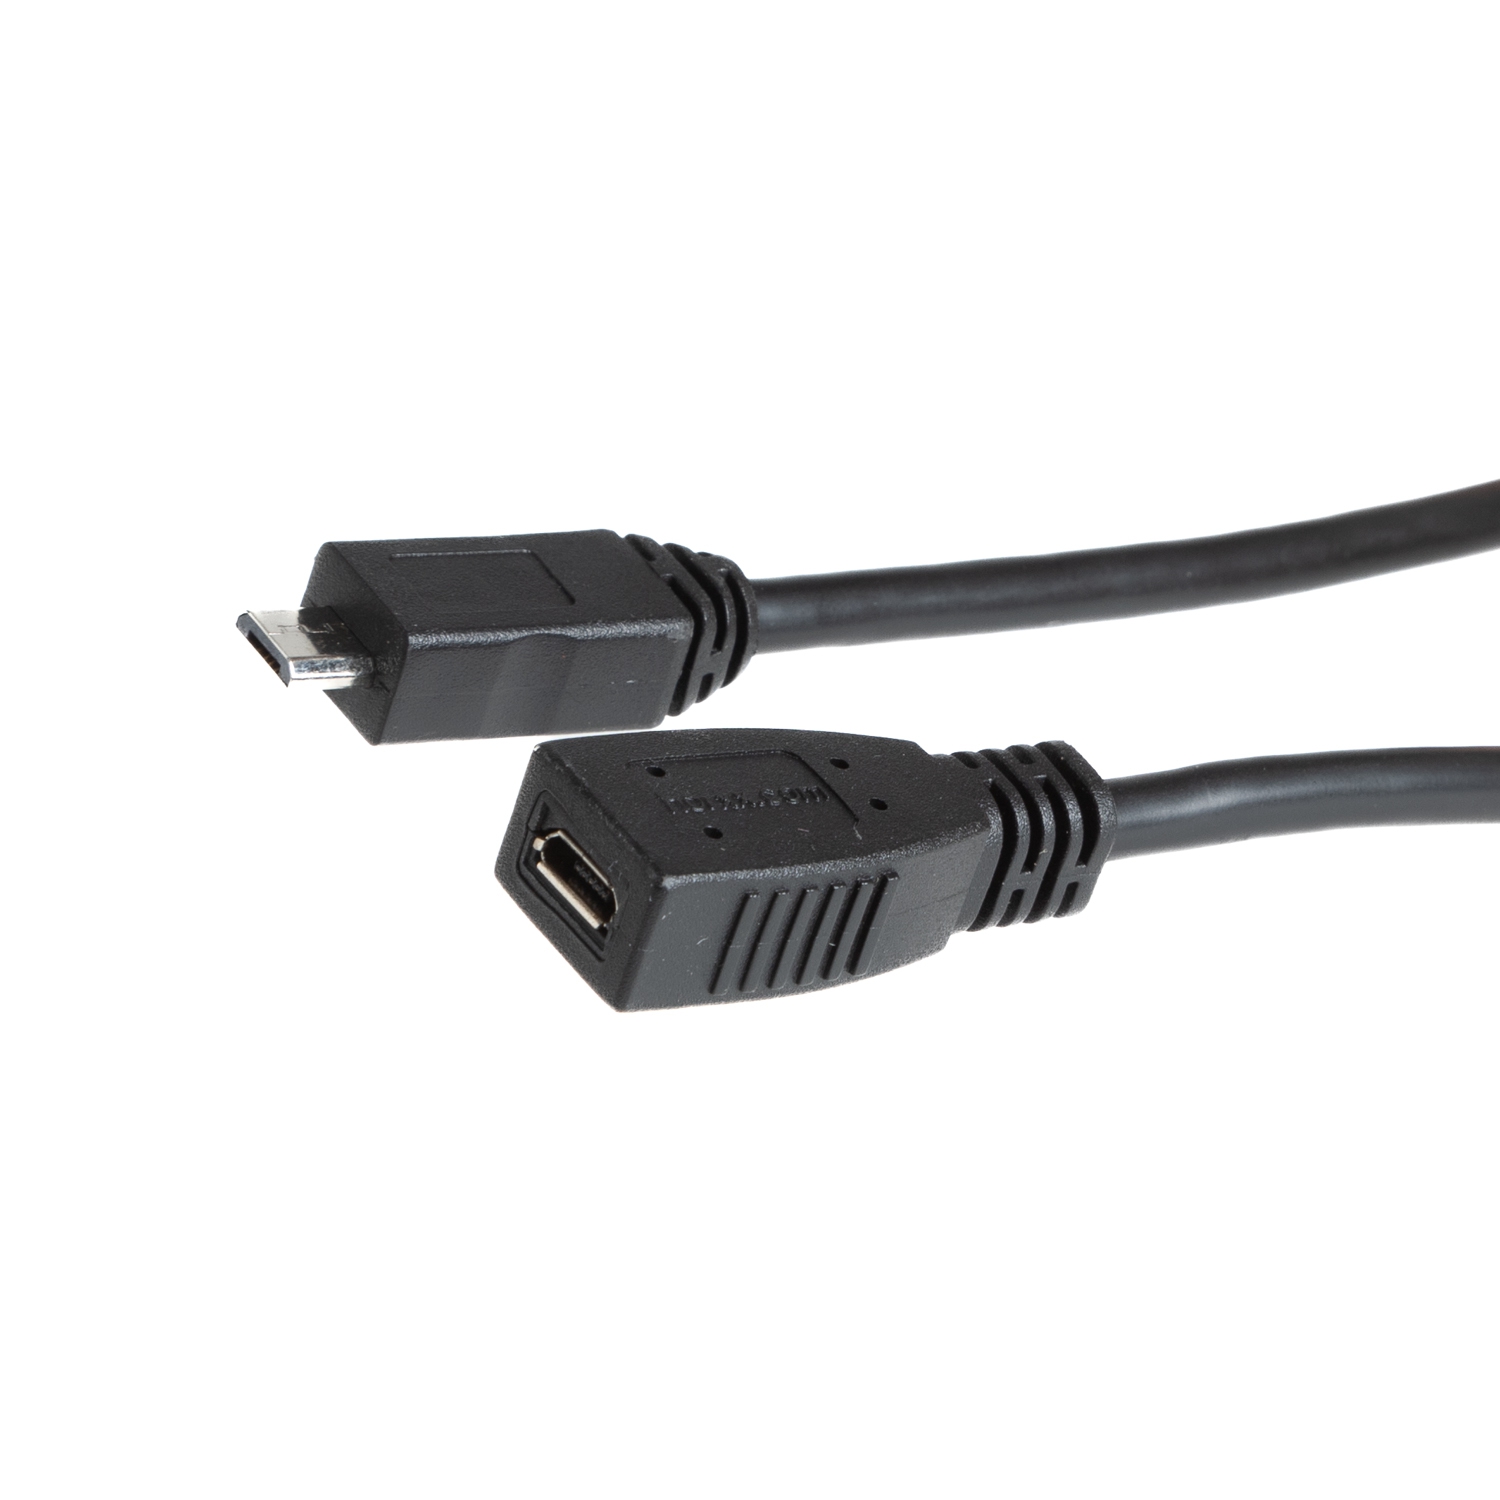 Rallonge USB 2.0 MICRO B, les 5 broches connectées 1 à 1, 30cm